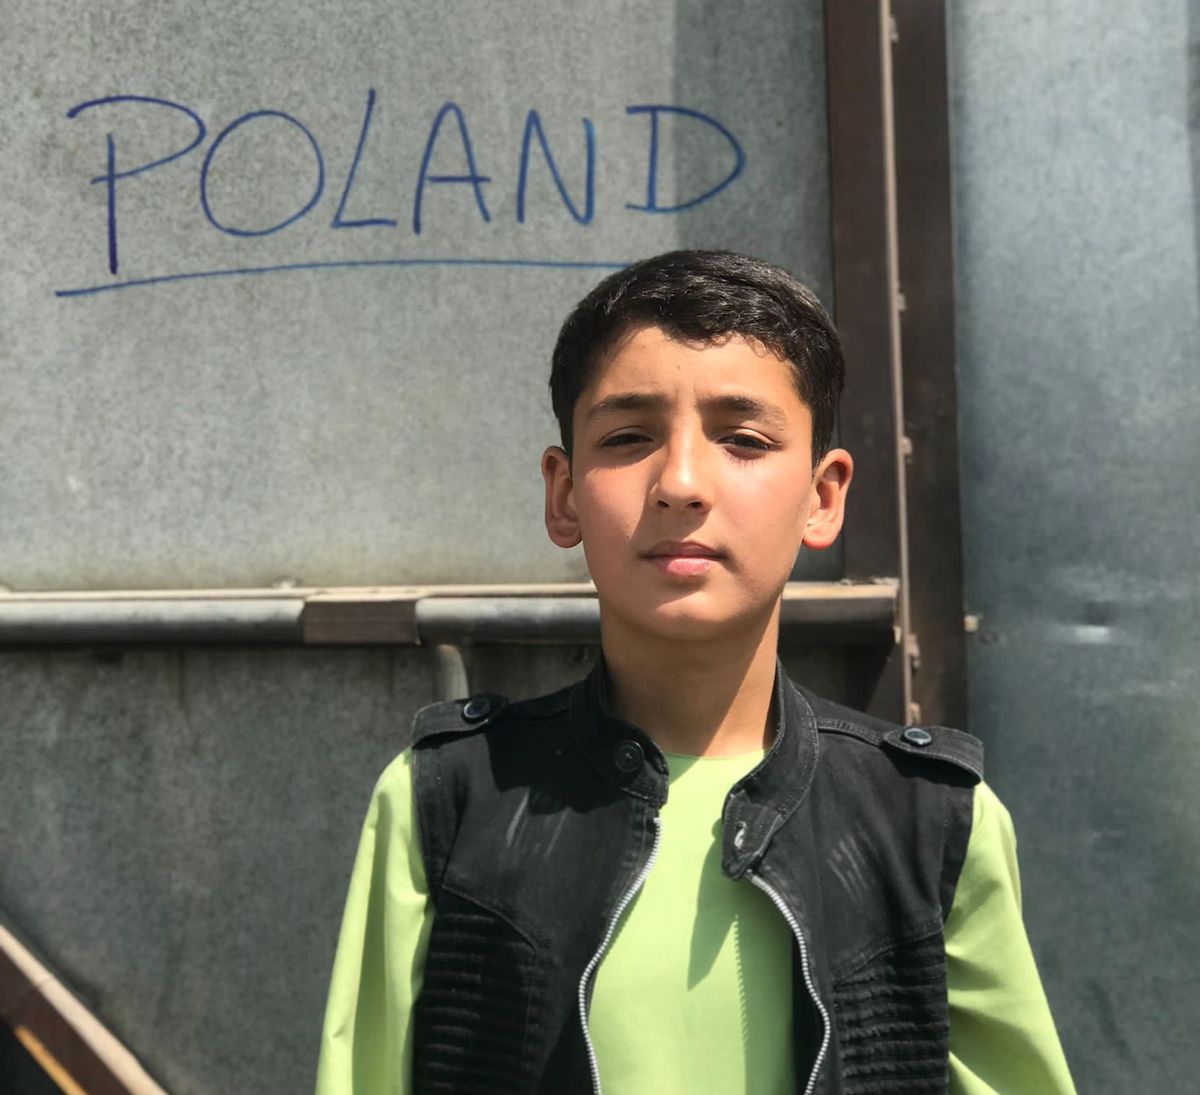 Fawad zgubił rodziców podczas ewakuacji z Afganistanu. Potrzebna pomoc 